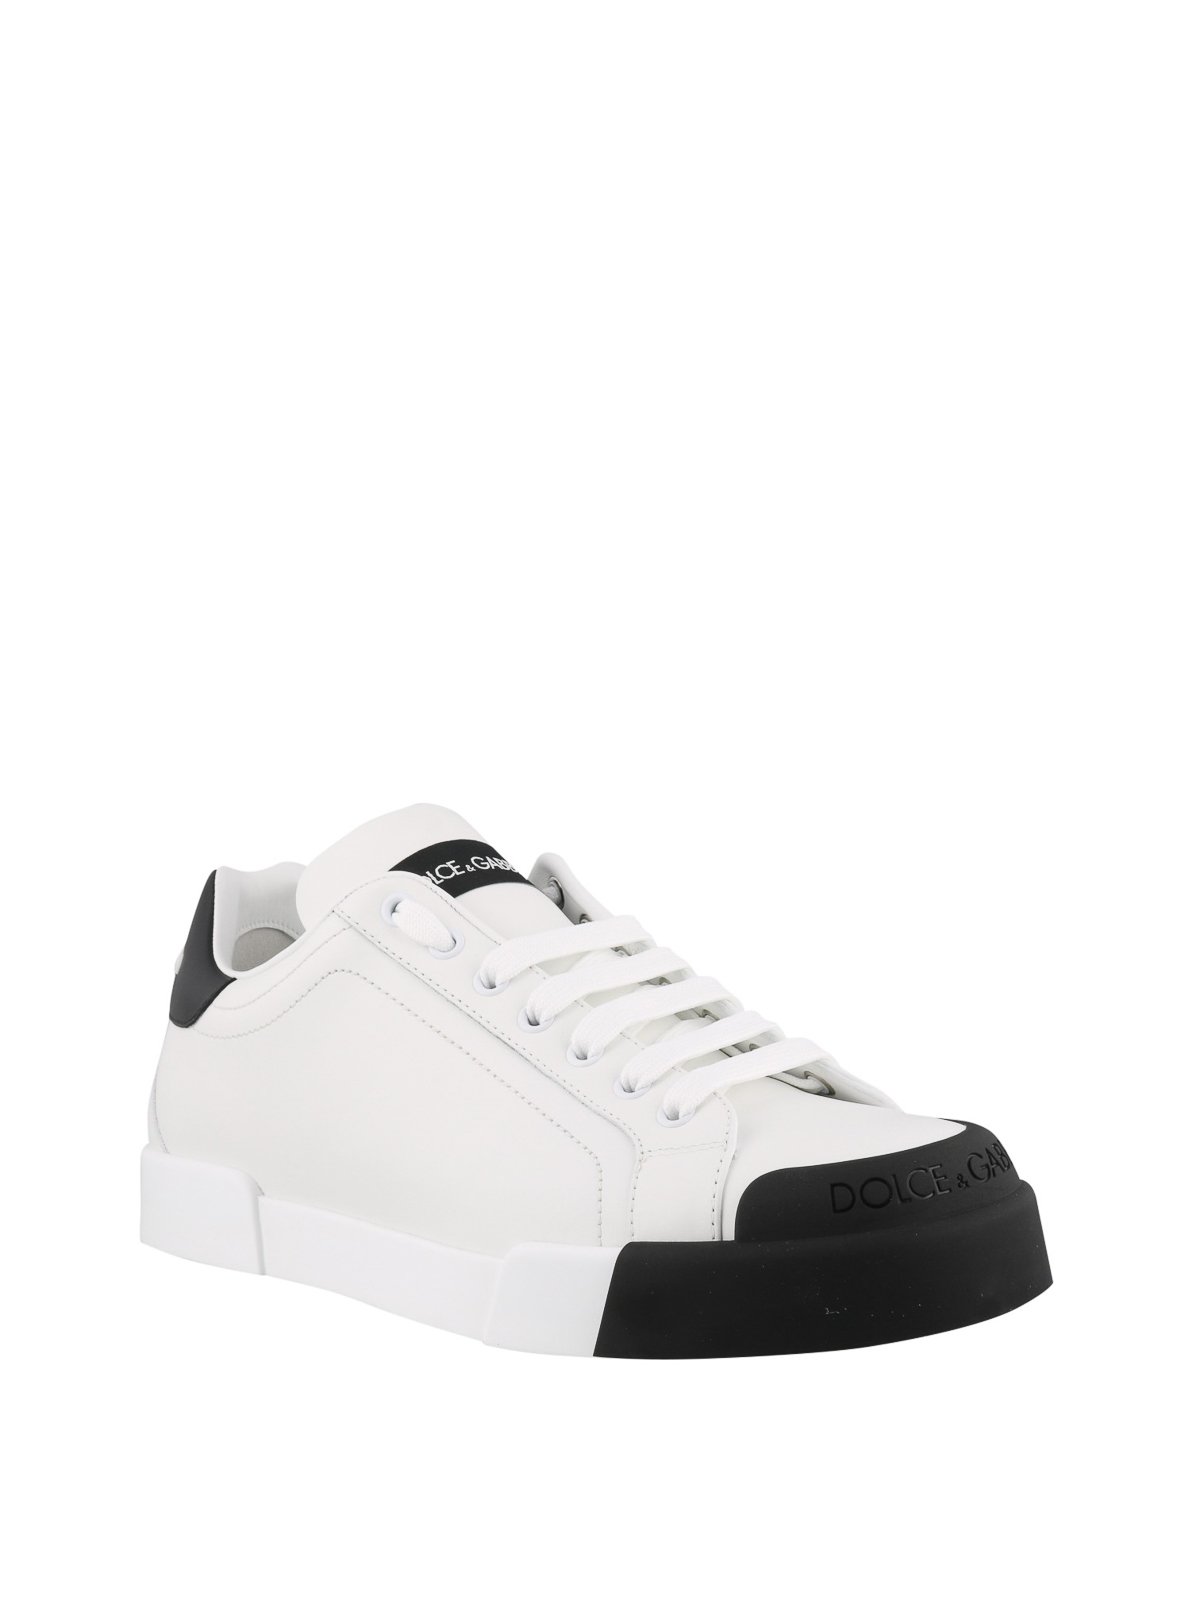 Trainers Dolce & Gabbana - Portofino black and white sneakers ...